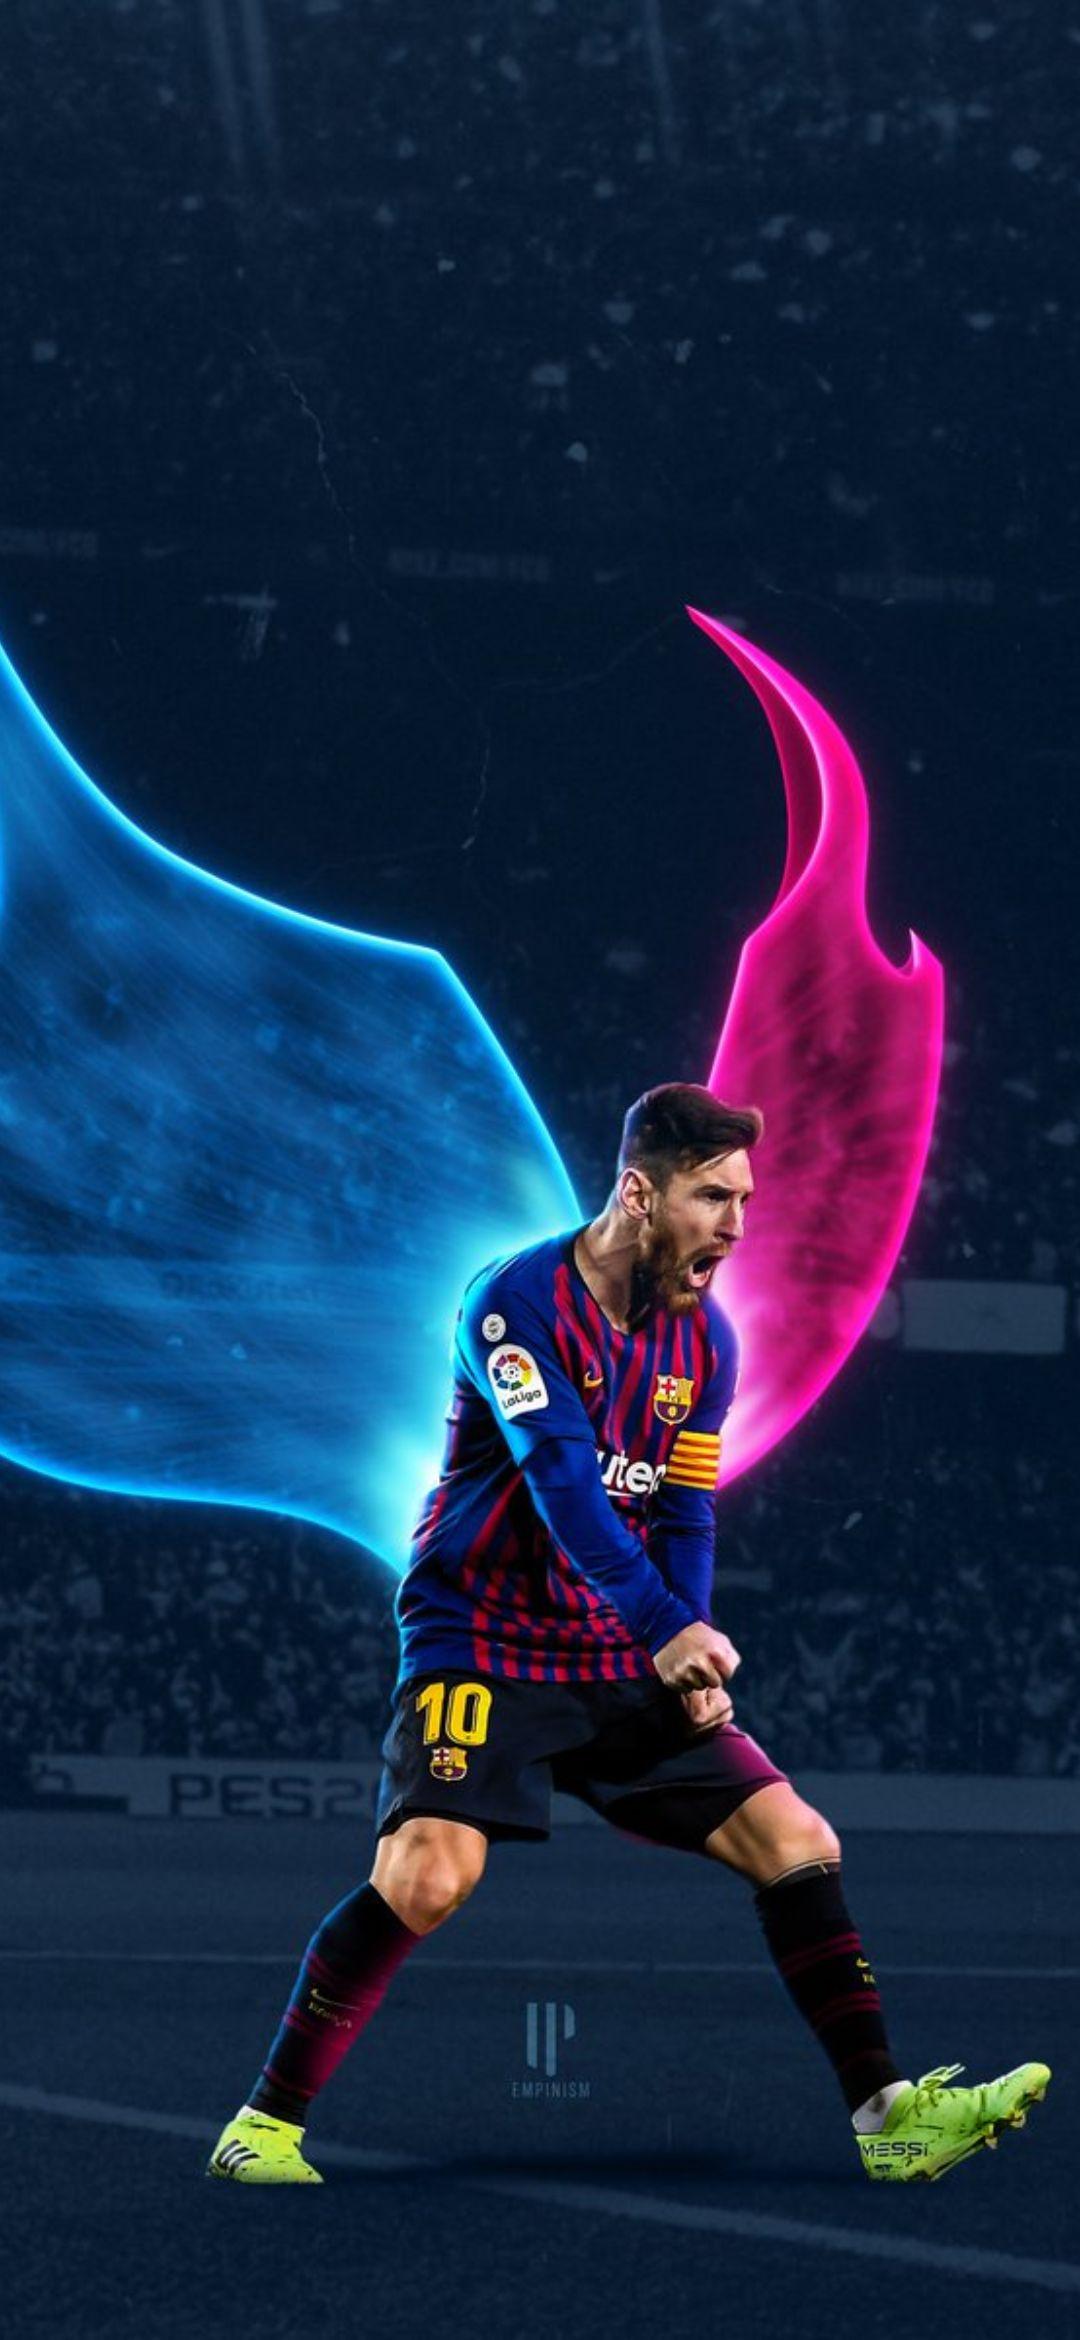 Messi full HD backgrounds: Sự tập trung và sự nghiêm túc của Messi được phản ánh rõ trong Messi full HD backgrounds. Với chất lượng hình ảnh sắc nét, bạn có thể tận hưởng những khoảnh khắc tuyệt đẹp của Messi ngay tại màn hình của mình. Hãy tải ngay để có những trải nghiệm tuyệt vời nhất.